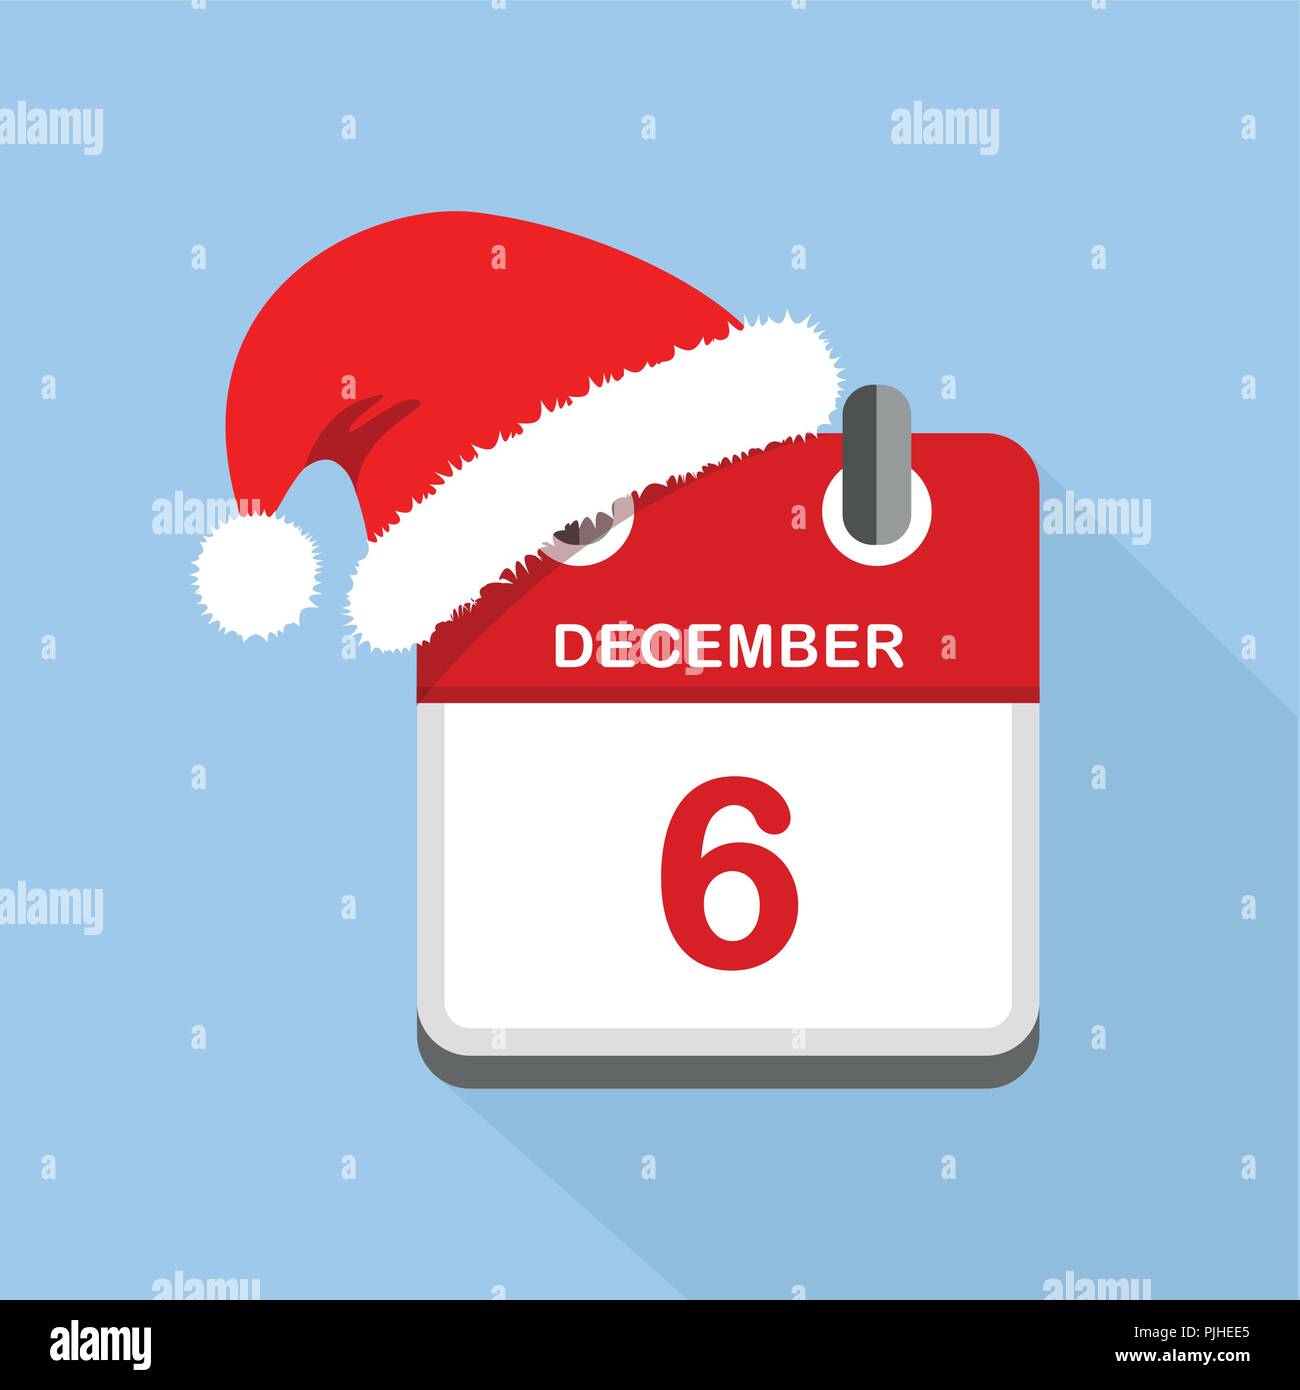 Calendrier rouge 6 décembre Saint Nicolas fond bleu vector illustration Image Vectorielle Stock - Alamy